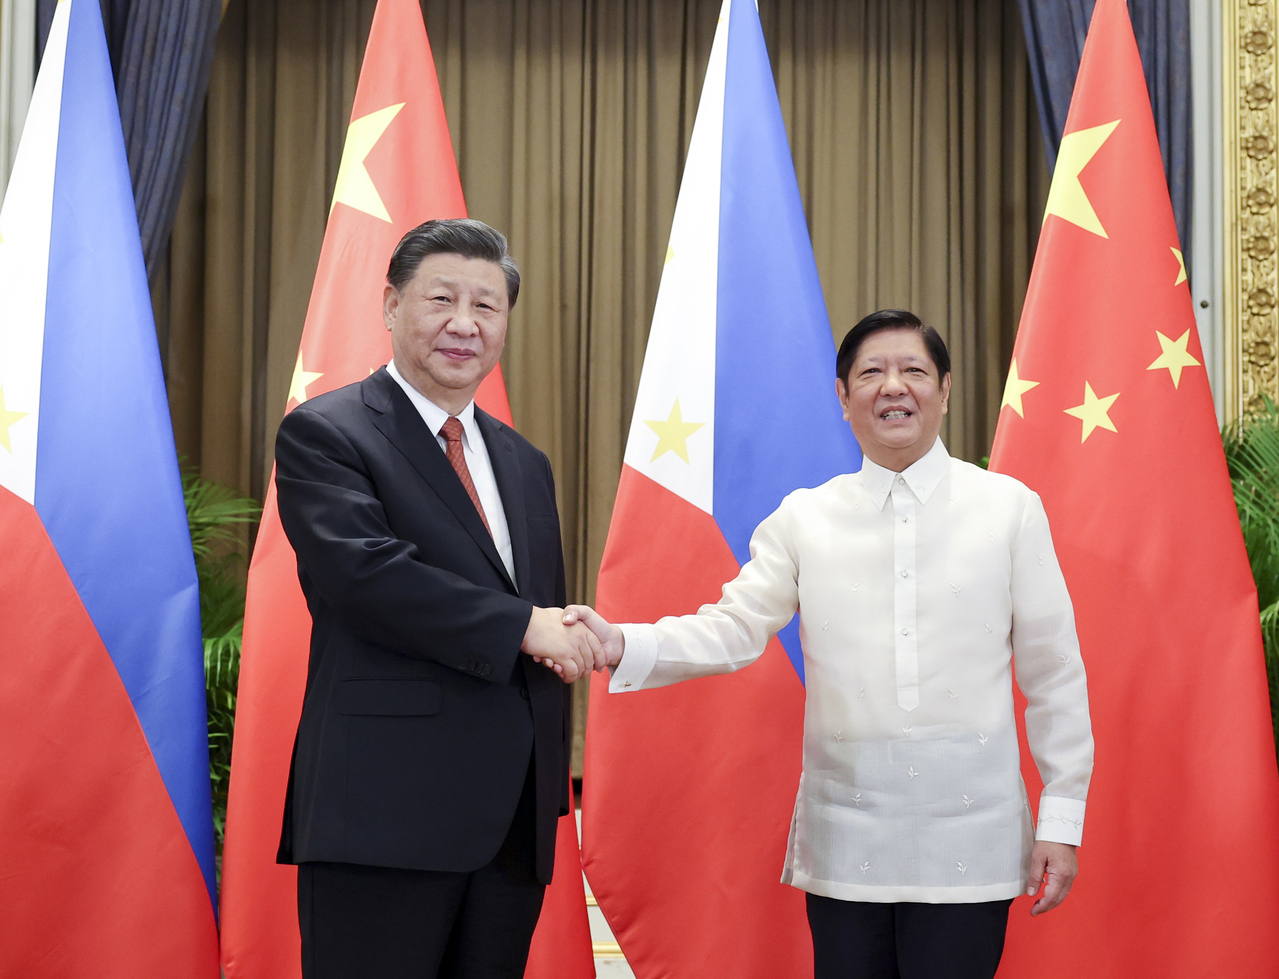 中国大陆跟菲律宾主要争议就是南海问题。双方曾在黄岩岛有过对峙。图为习近平（左）与小马可仕17日在泰国曼谷会晤。习近平当时强调在南海问题上，双方要坚持友好协商，「妥处分歧争议」。新华社